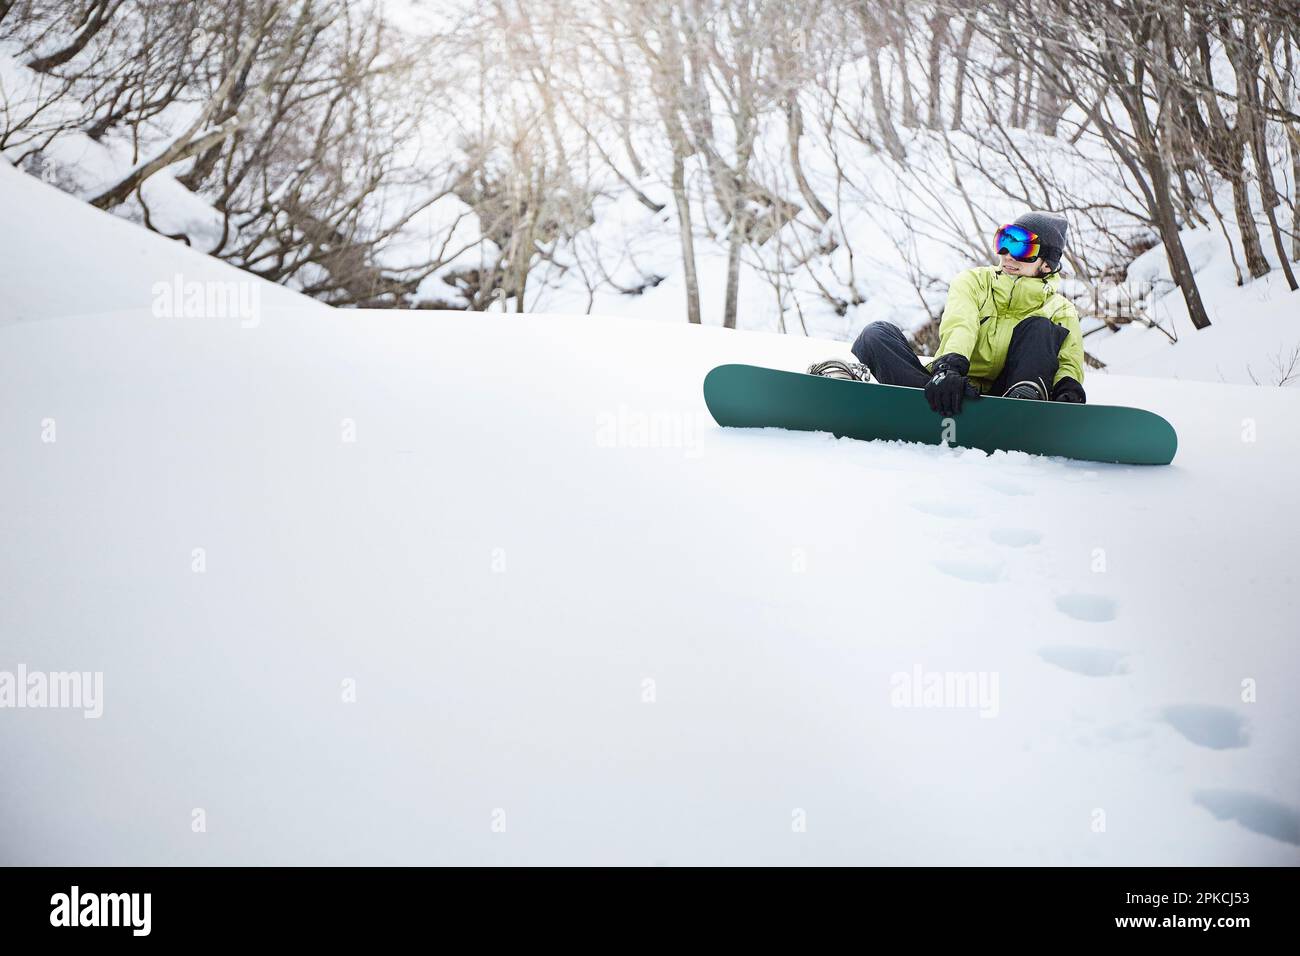 Snowboarder sitting on snow mountain Stock Photo